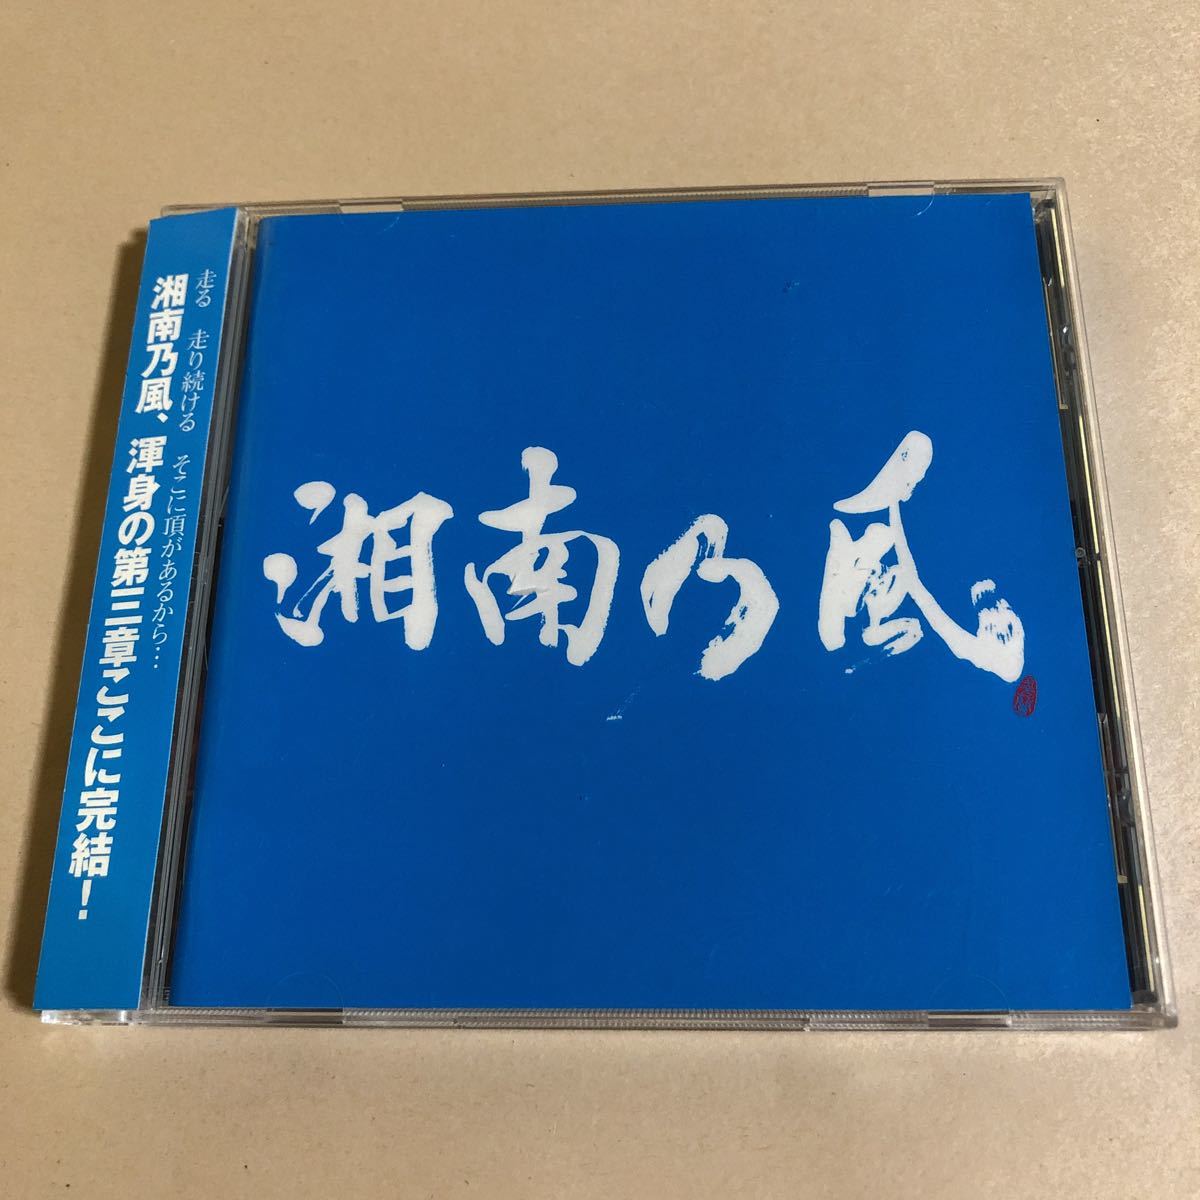 湘南乃風 1CD「Riders High」_画像1